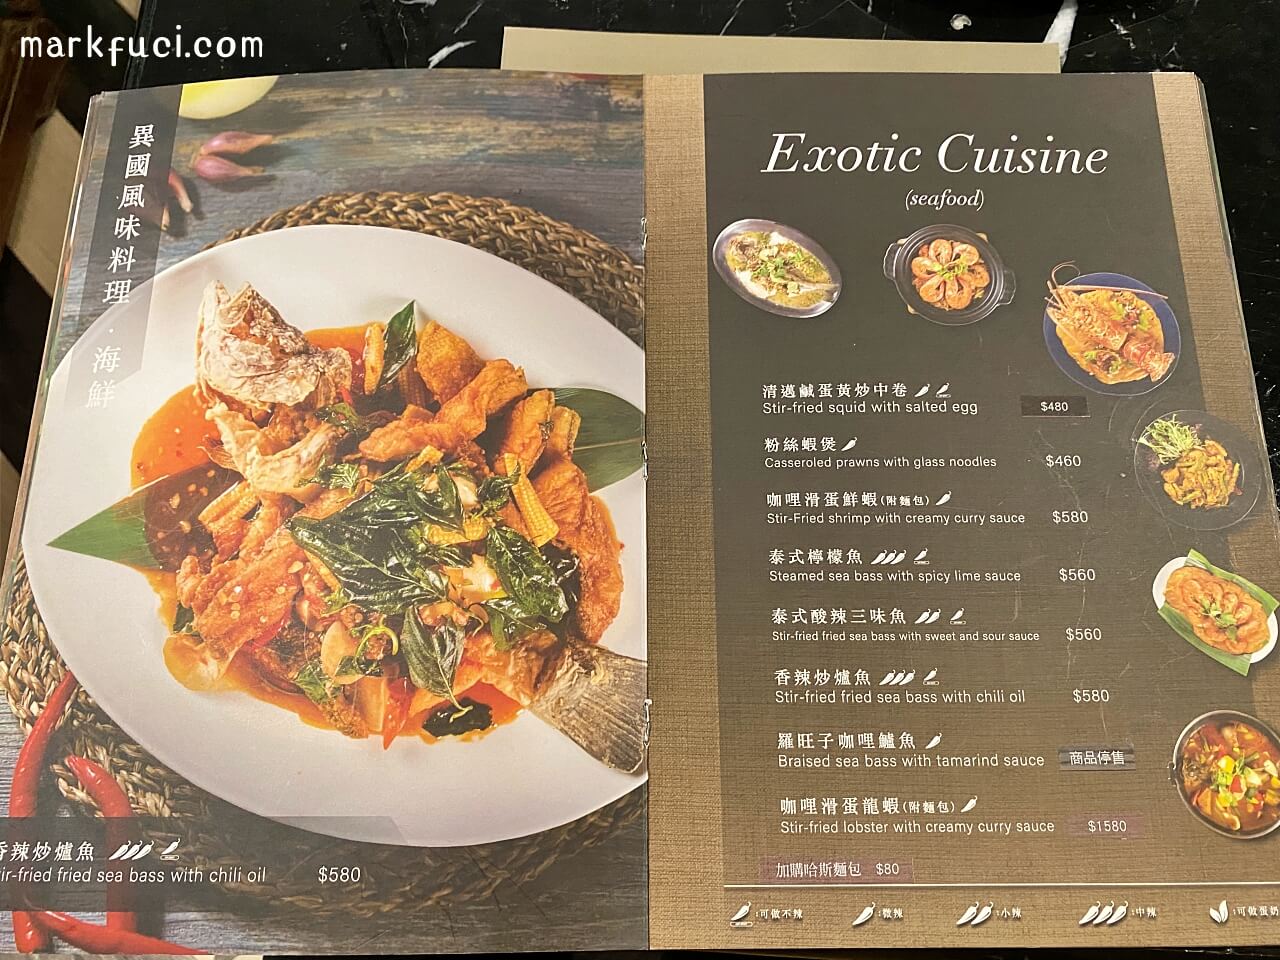 Thai J 泰式料理 菜單